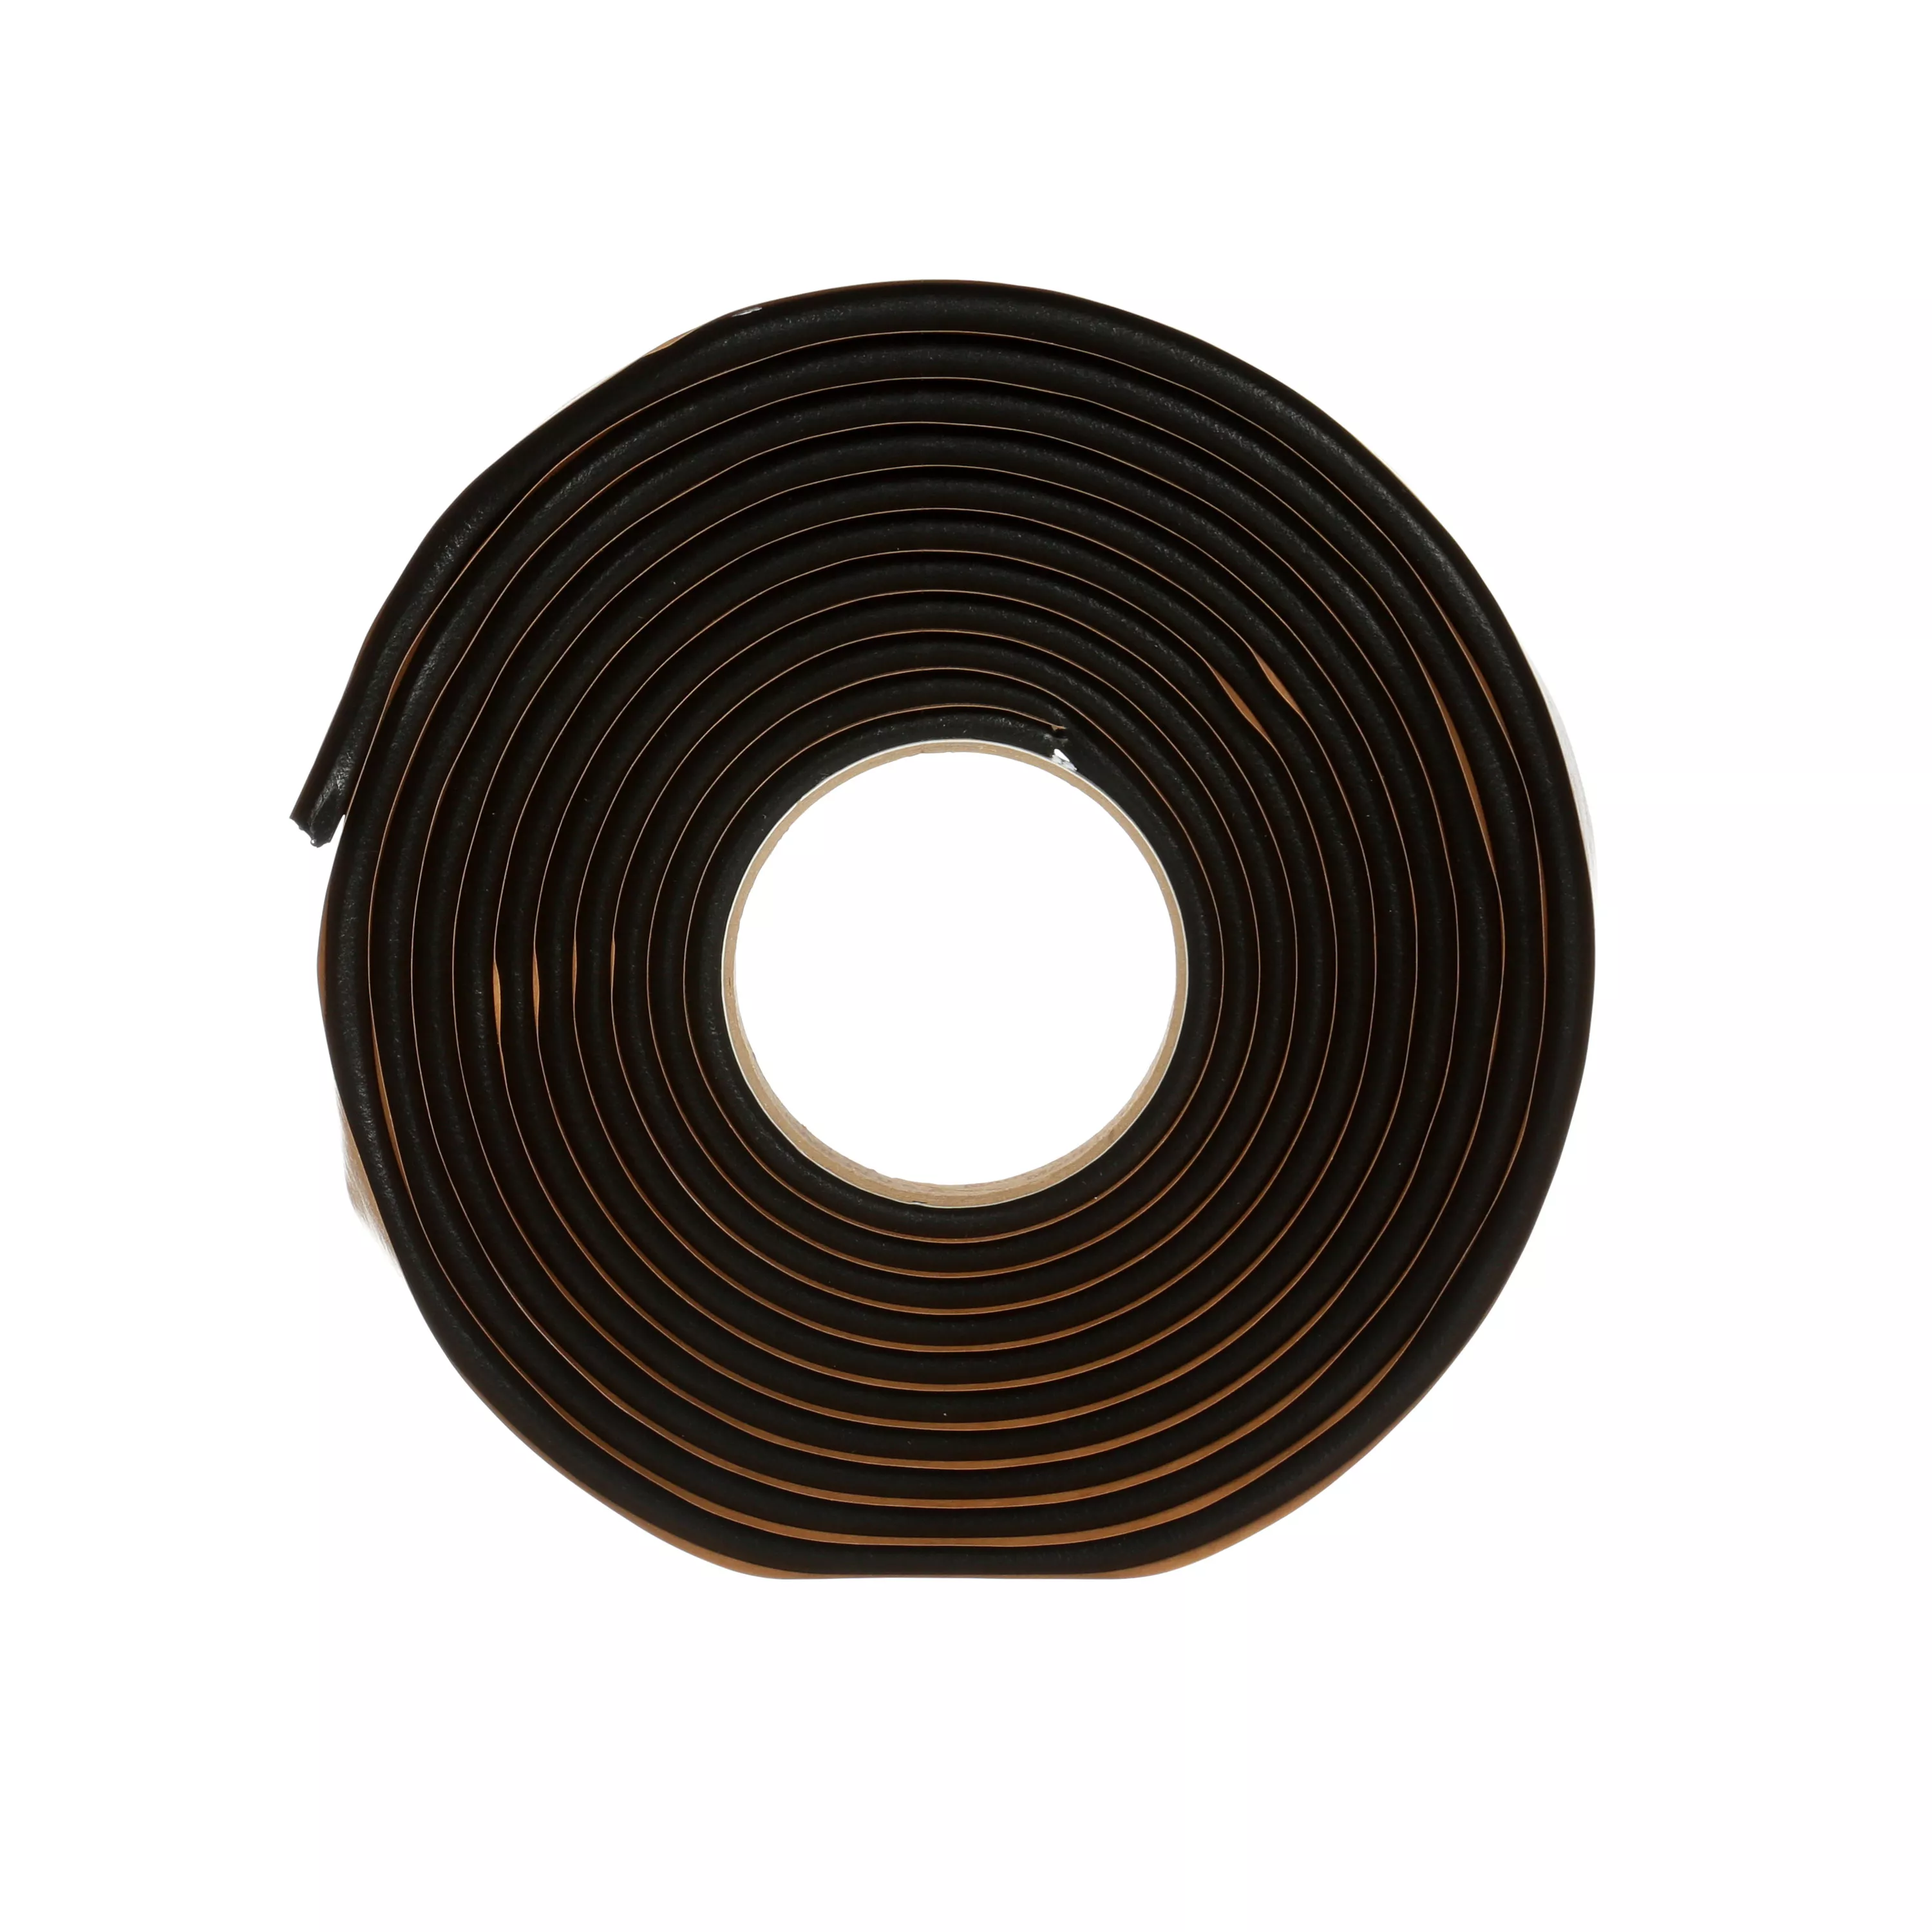 3M™ Windo-Weld™ Round Ribbon Sealer, 08611, 5/16 in x 15 ft Kit, 12 per
case